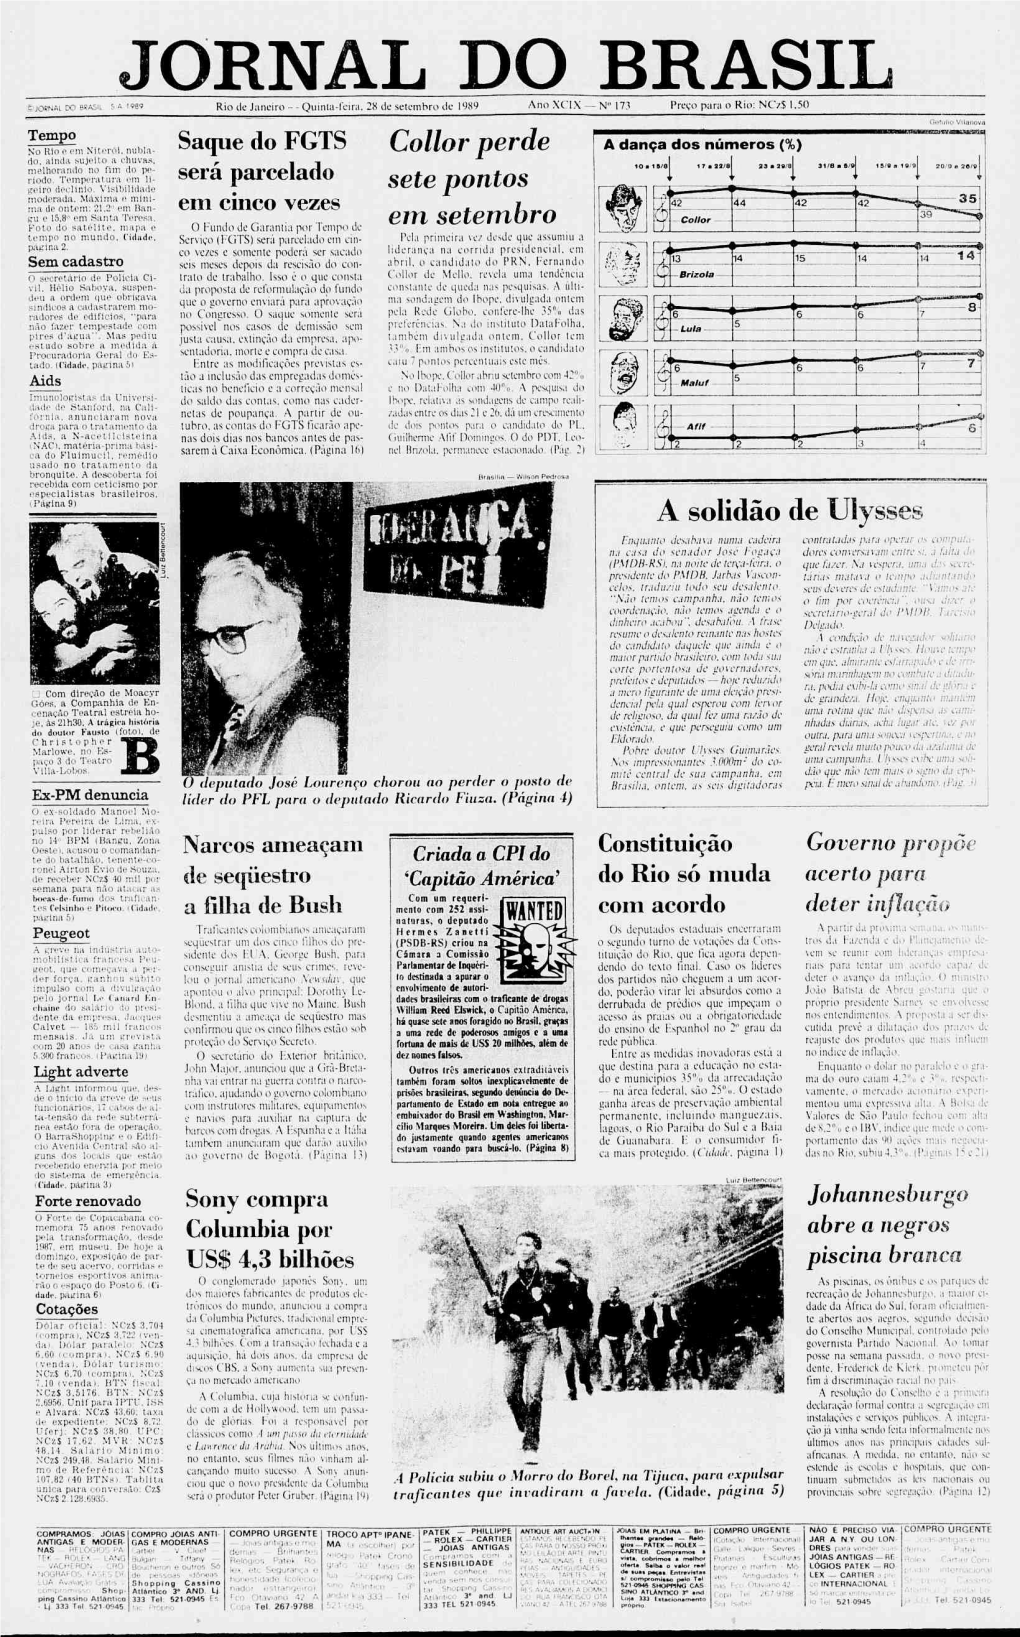 Quinta-Feira, 28 De Setembro De 1989 Ano XCIX — N° 173 P